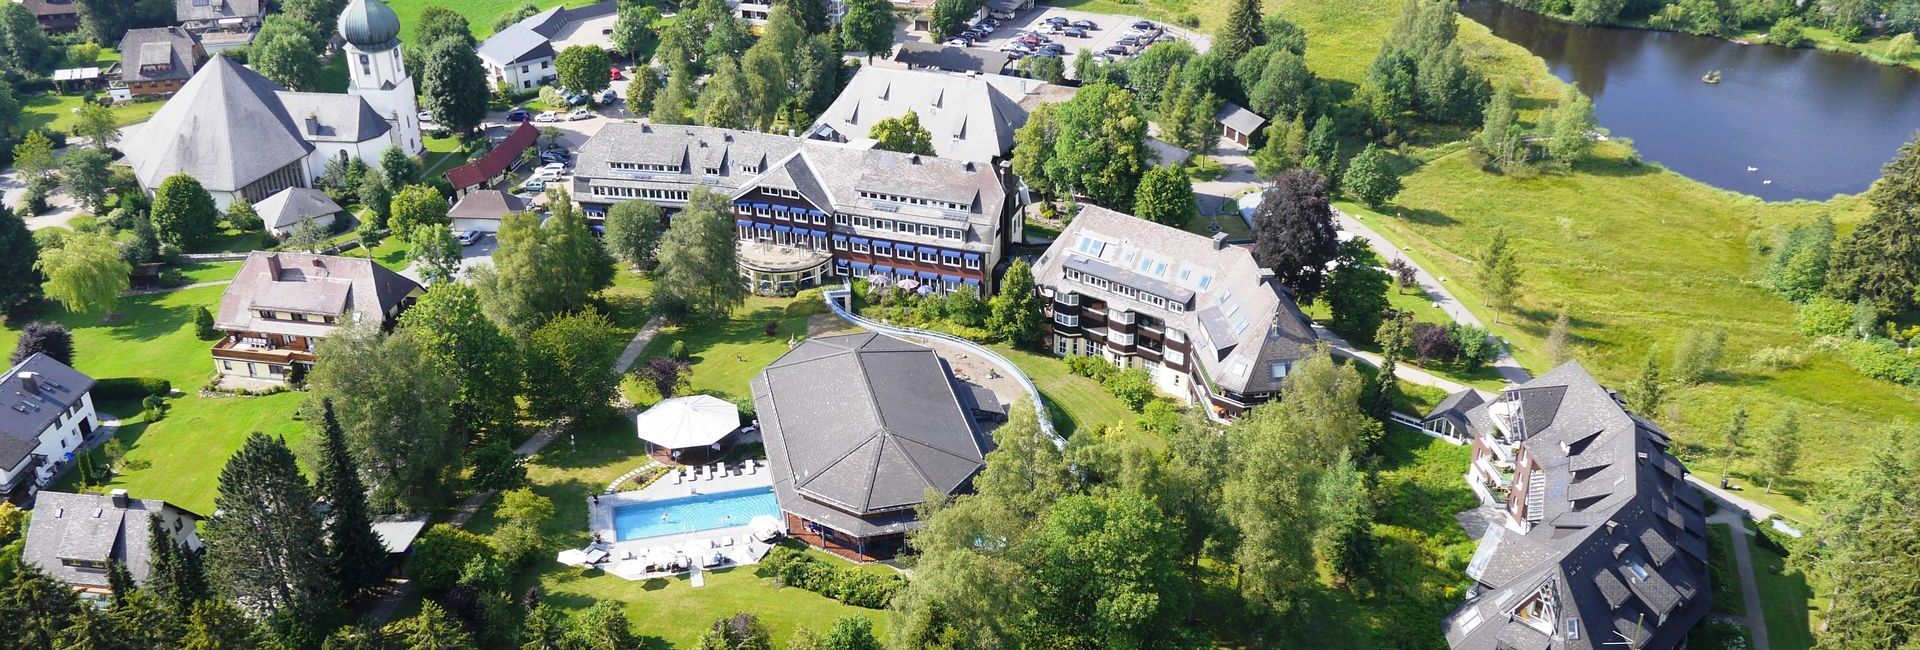 Parkhotel Adler in Hinterzarten, Black Forest